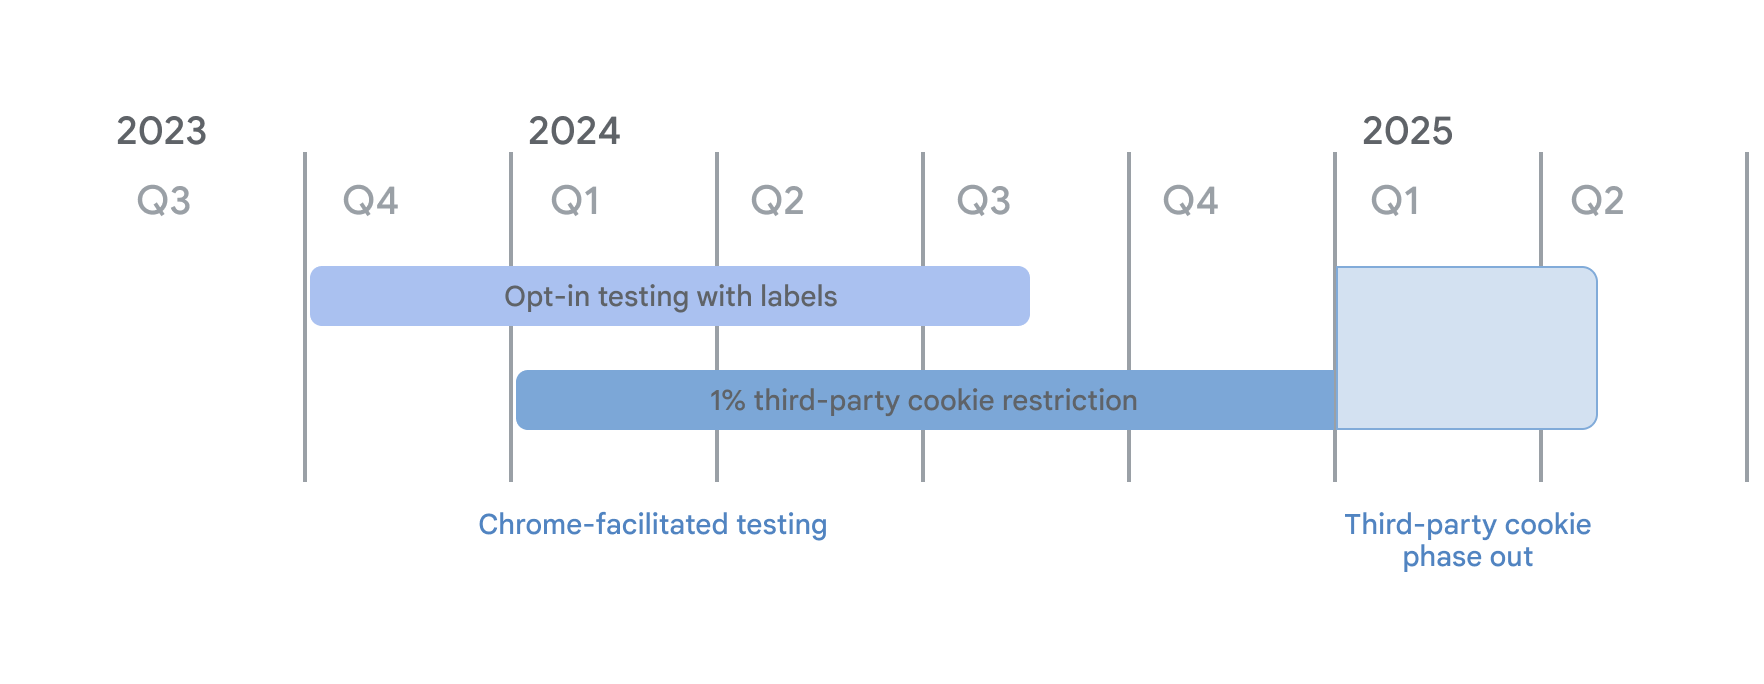 Harmonogram wycofywania plików cookie innych firm. W ramach testów przeprowadzanych przy użyciu Chrome rozpoczęły się testy opcjonalne z trybem etykiet, które rozpoczęły się w IV kwartale 2023 r., a od 4 stycznia 2024 r. wprowadziliśmy 1% ograniczeń nałożonych na 3 PC. Oba będą obowiązywać do I kwartału 2025 r., kiedy to rozpocznie się wycofywanie plików cookie innych firm.